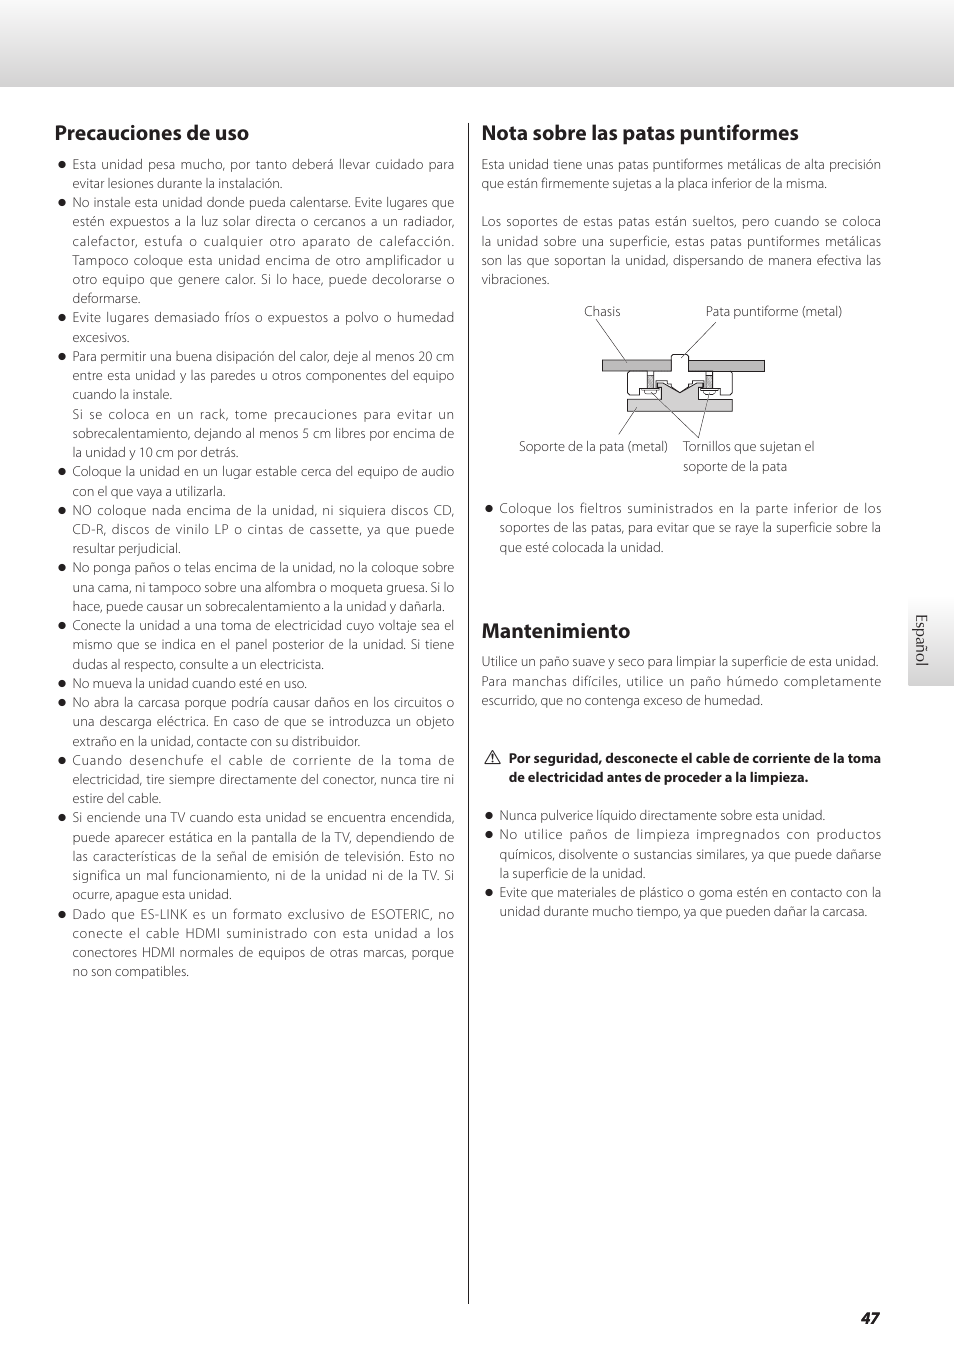 Precauciones de uso, Nota sobre las patas puntiformes, Mantenimiento | Teac GRANDIOSO D1 User Manual | Page 47 / 68